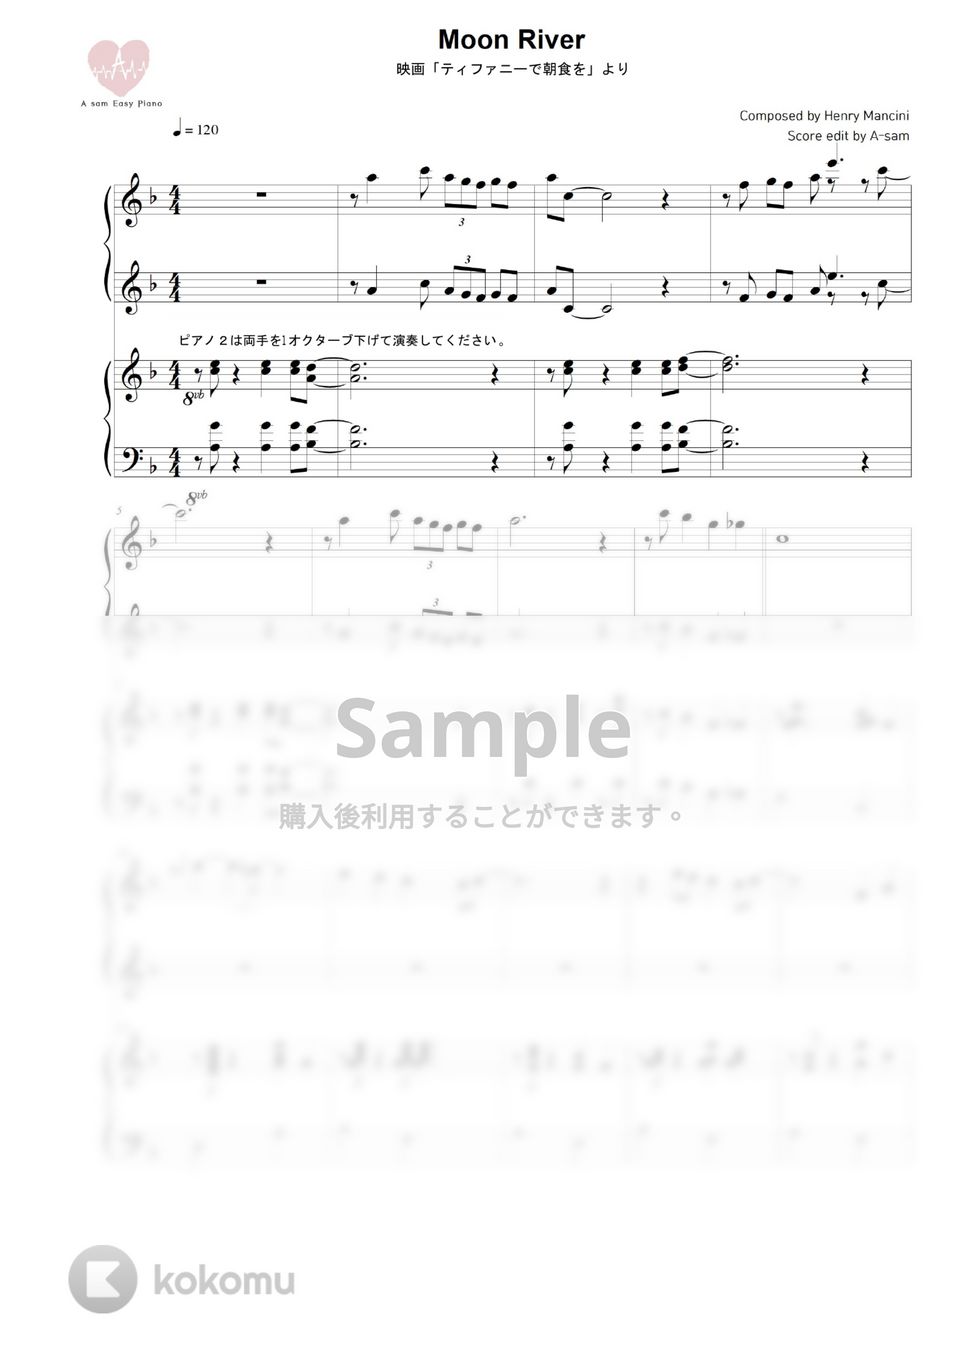 ティファニーで朝食を(Audrey Hepburn) - Moon River (ピアノ連弾 / Jazz ver.) by A-sam